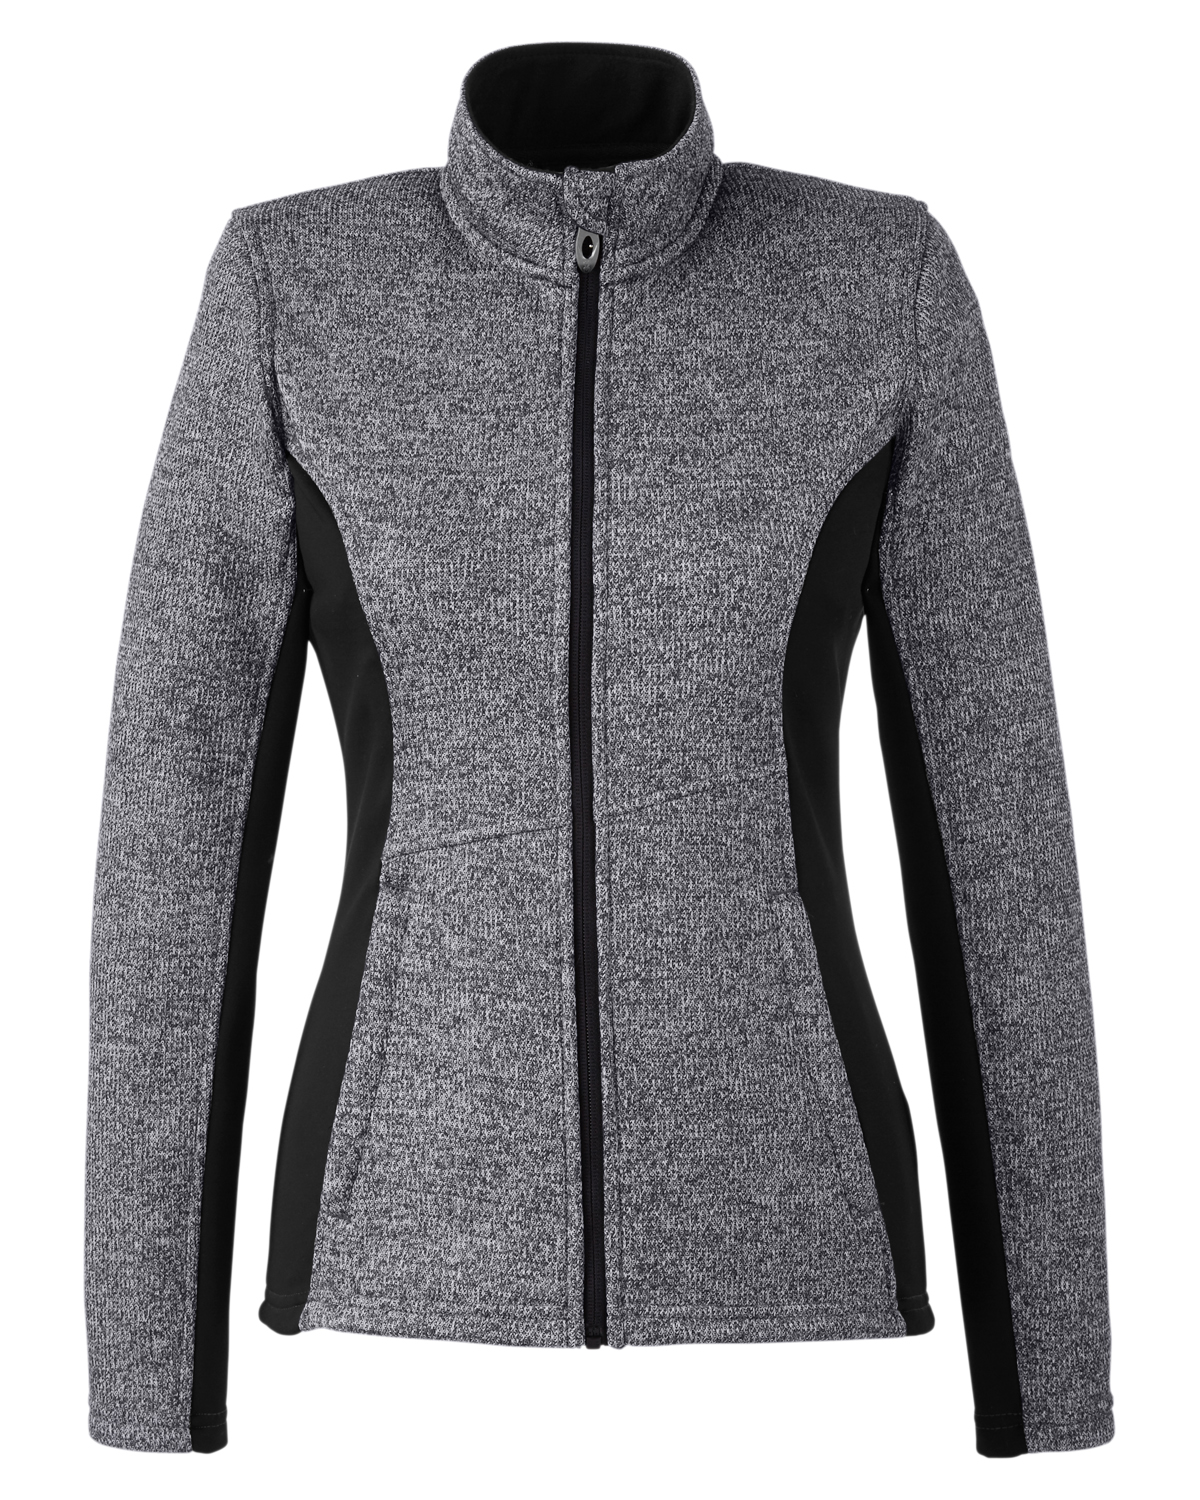 Picture of Spyder Ladies' Constant Full-Zip Sweater Fleece Jacket